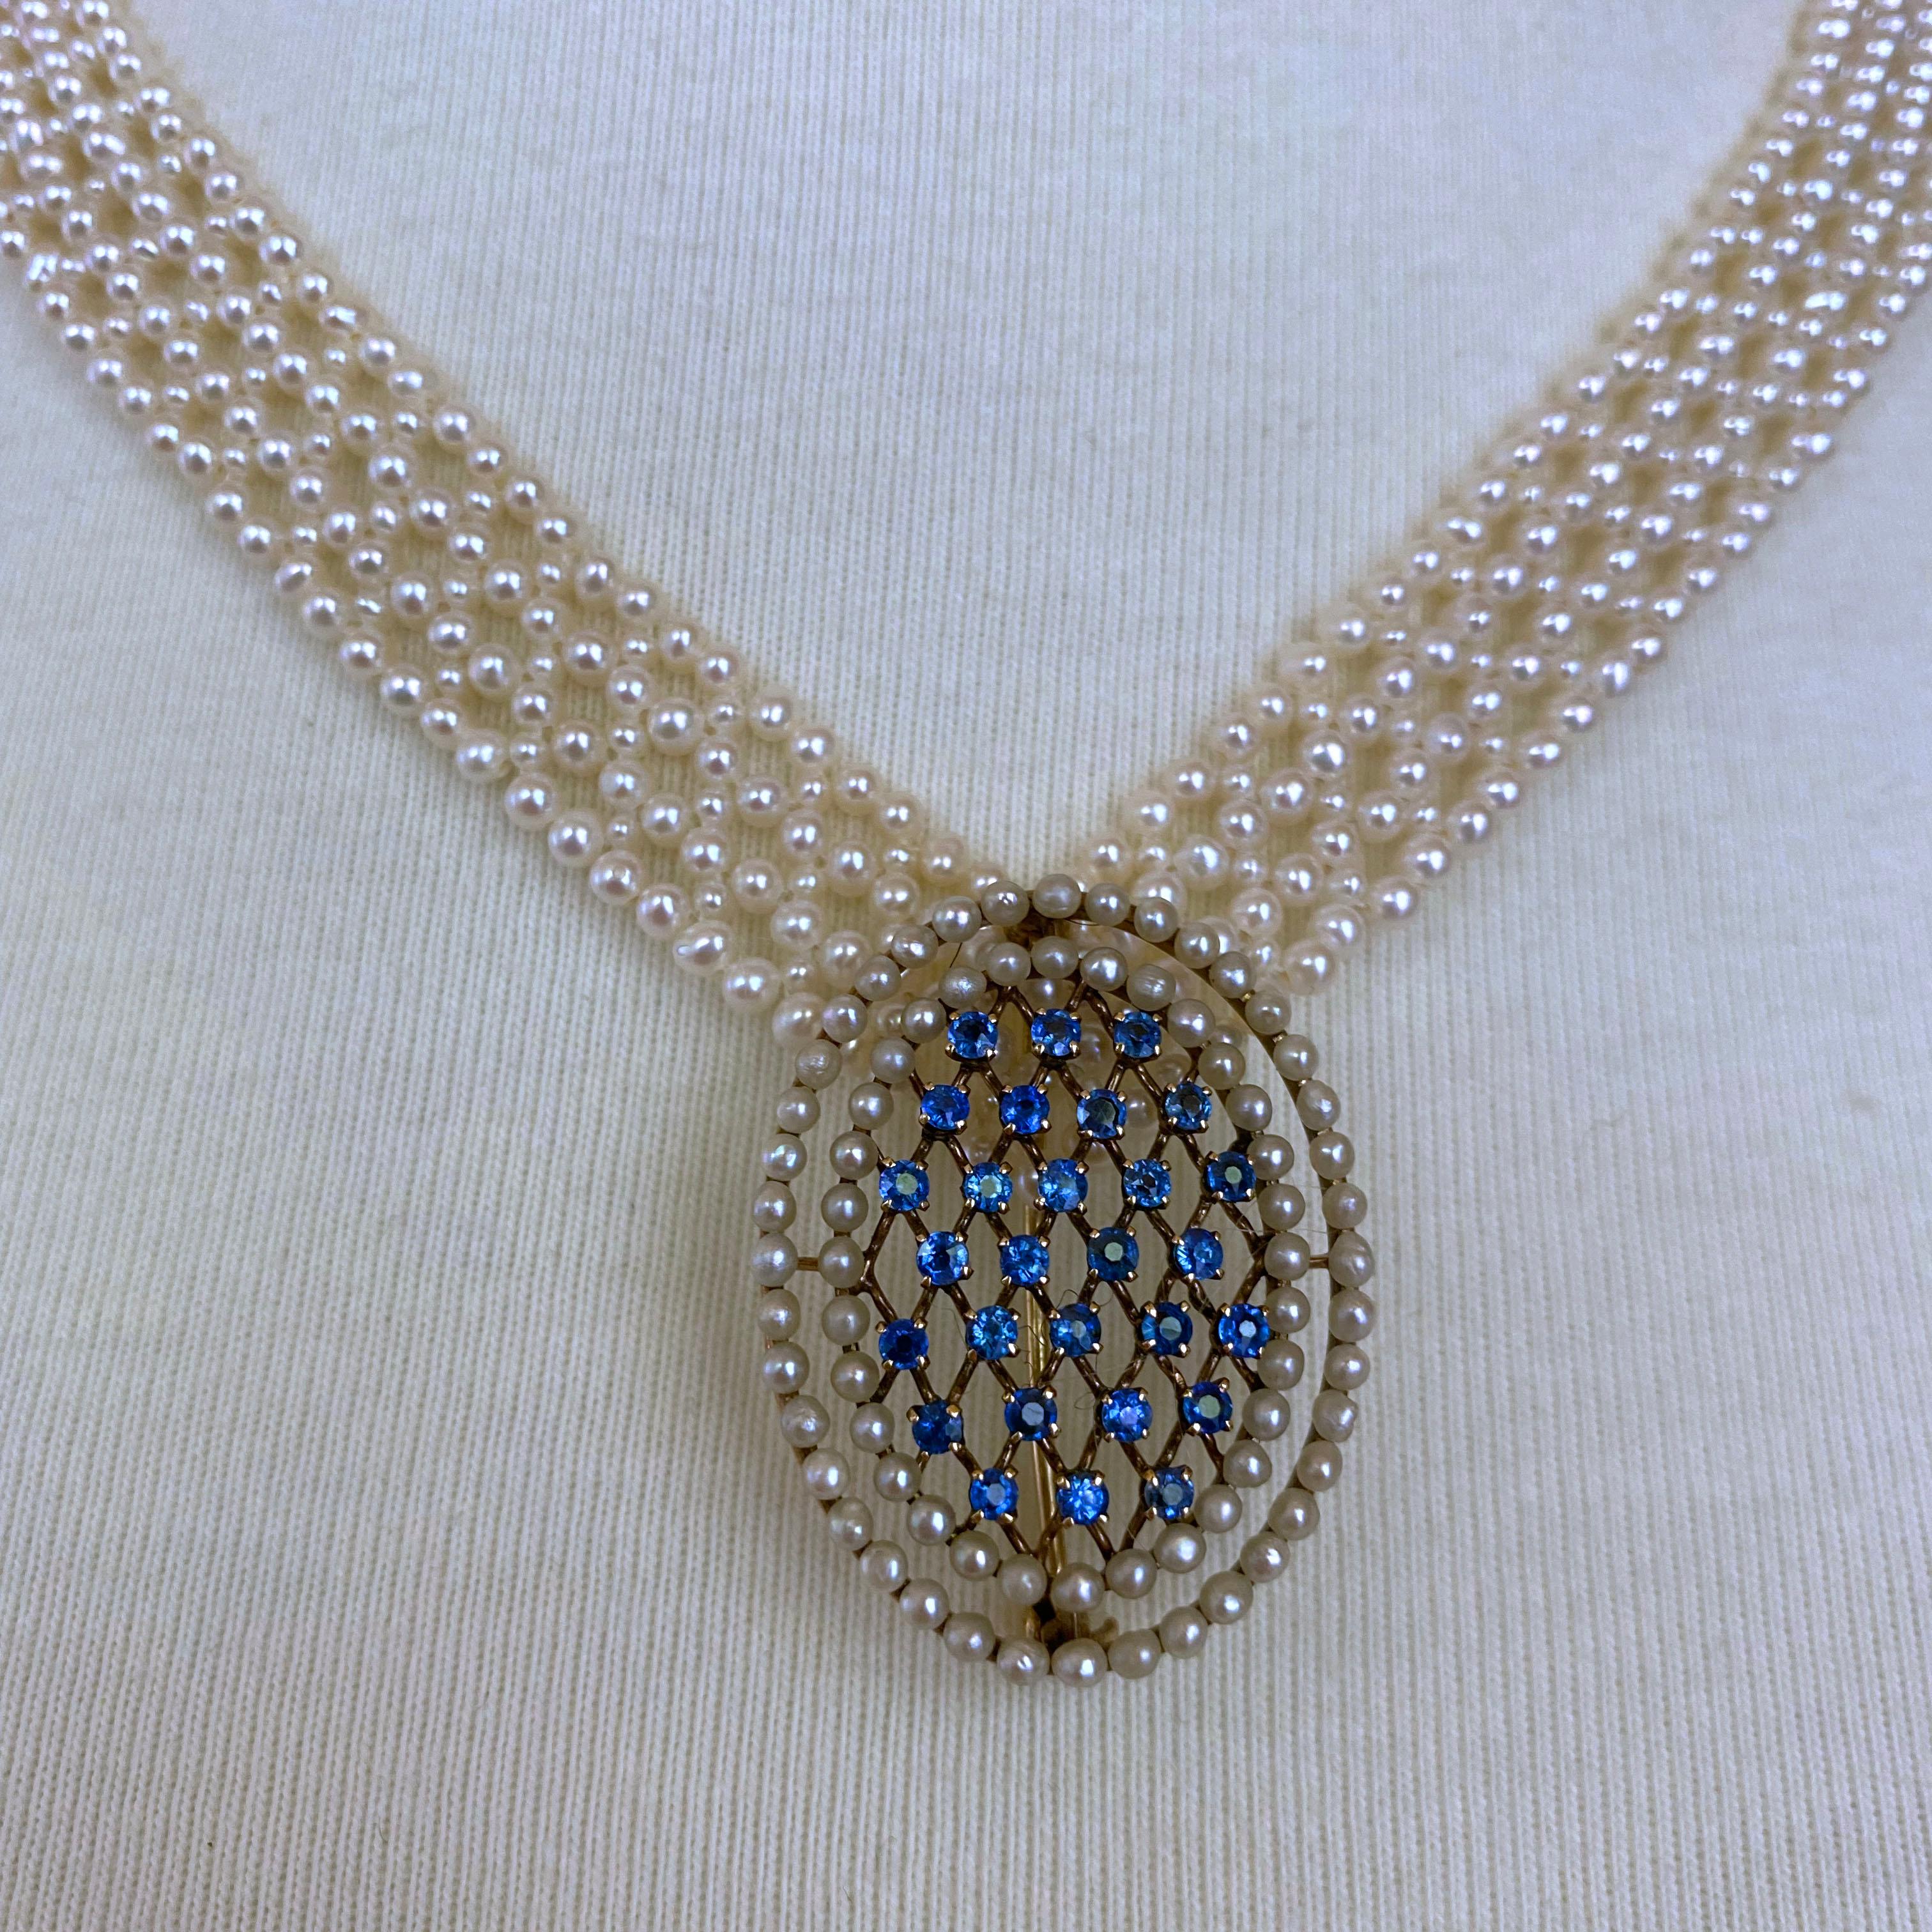 Cette pièce étonnante de Marina J. Ce collier est composé de véritables perles blanches de culture tissées de manière complexe pour former une dentelle serrée. Tissé en forme de 